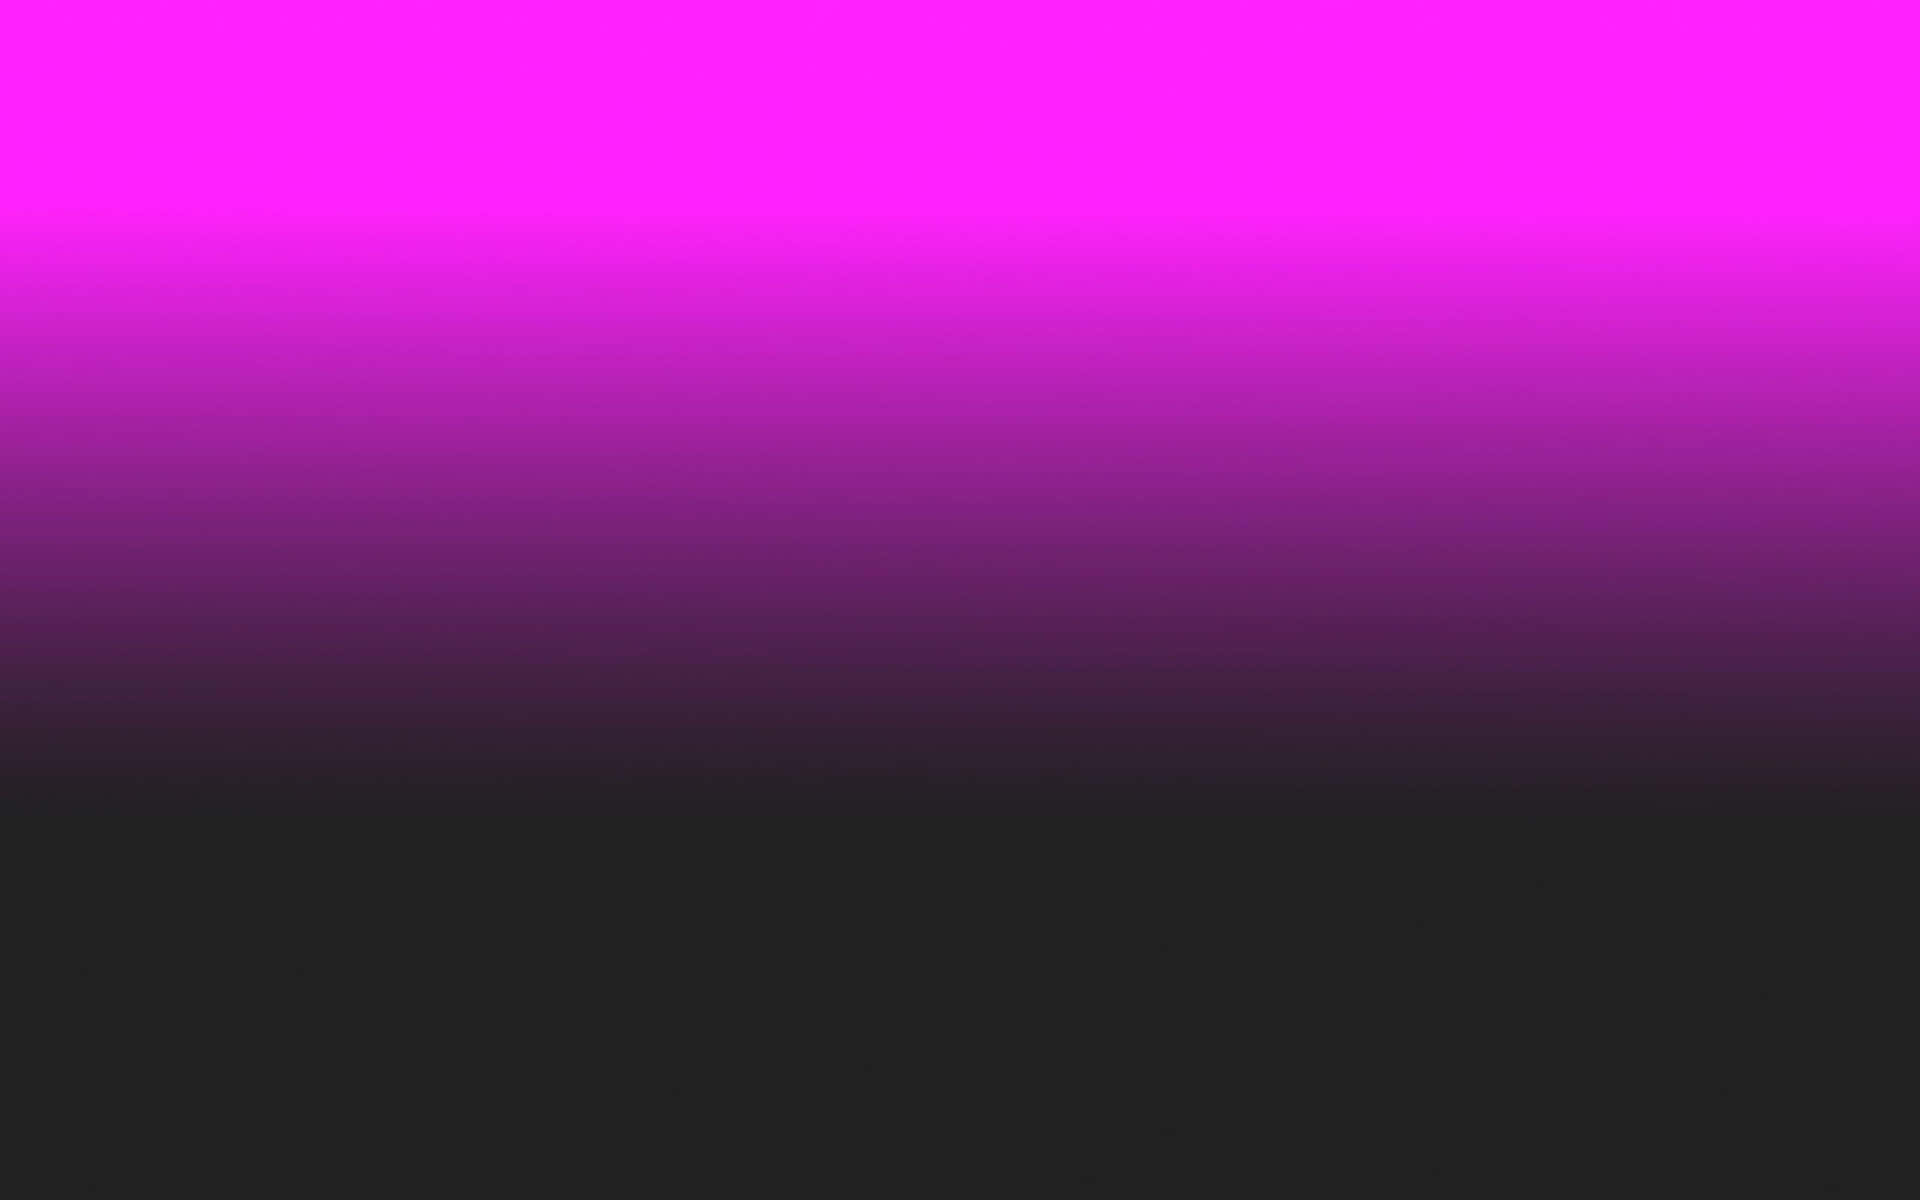 Un'assemblaggioaffascinante Di Colori Contrastanti - Rosa E Nero. Sfondo